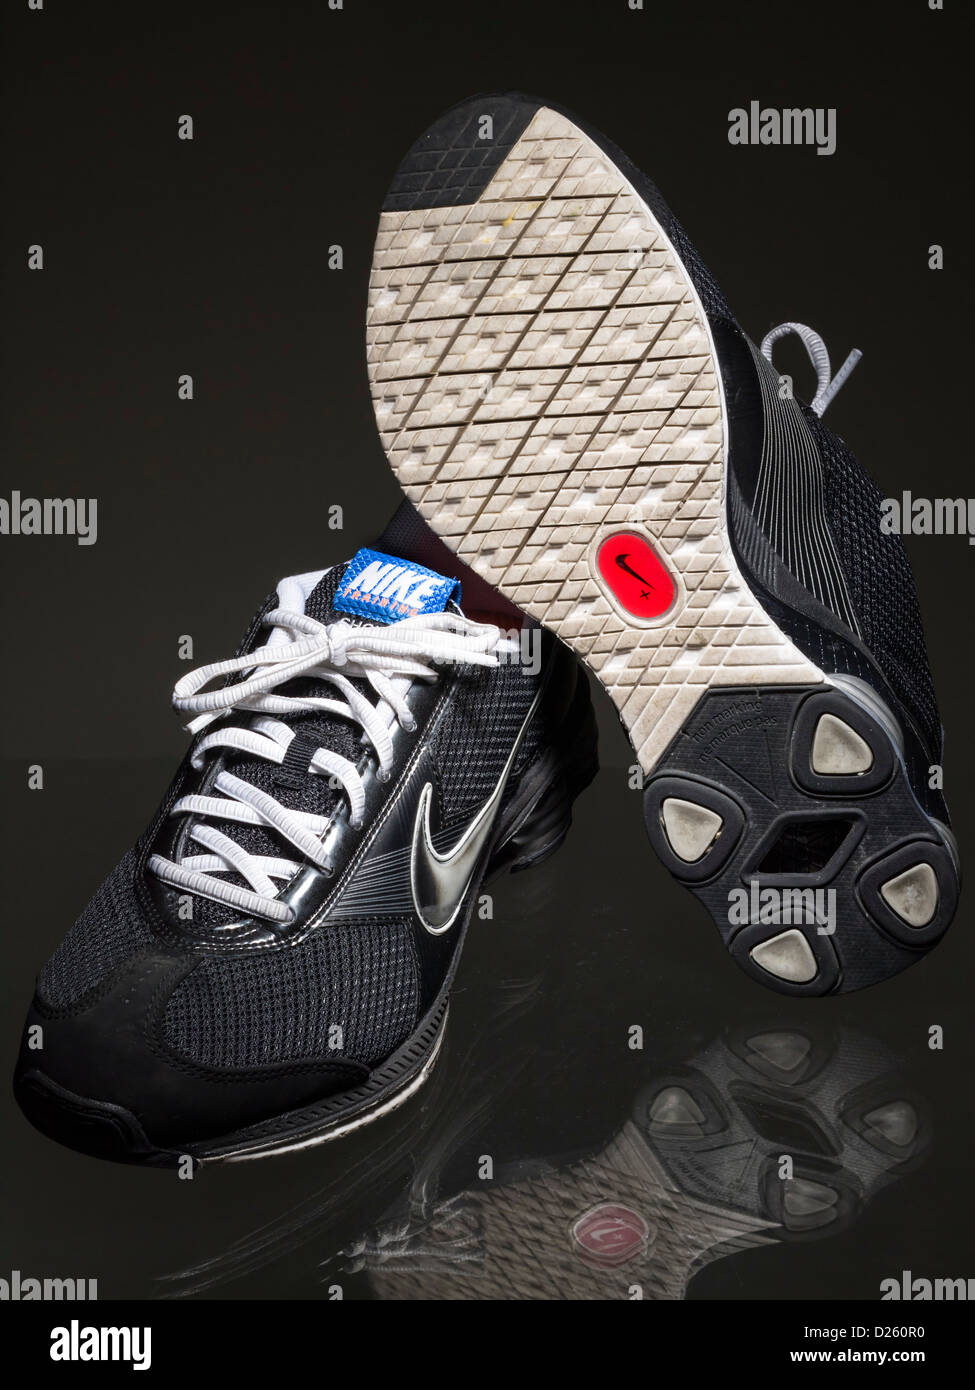 Capteur Nike + logo sur la seule chaussure de course Photo Stock - Alamy